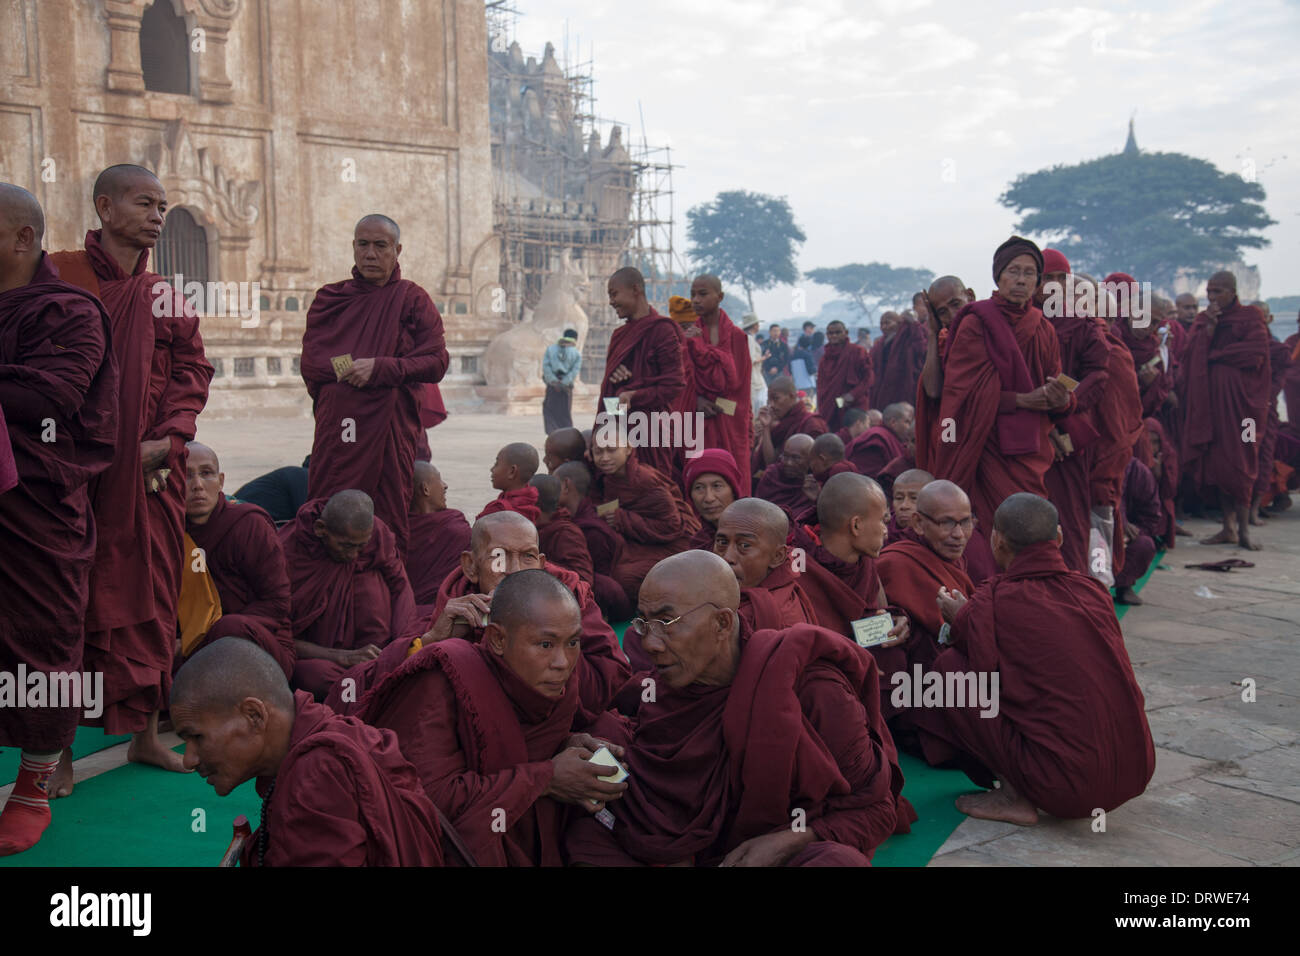 Mönche in einer Prozession, warten in einer langen Schlange um Almosen sammeln während der Ananda Festival Bagan Myanmar Stockfoto